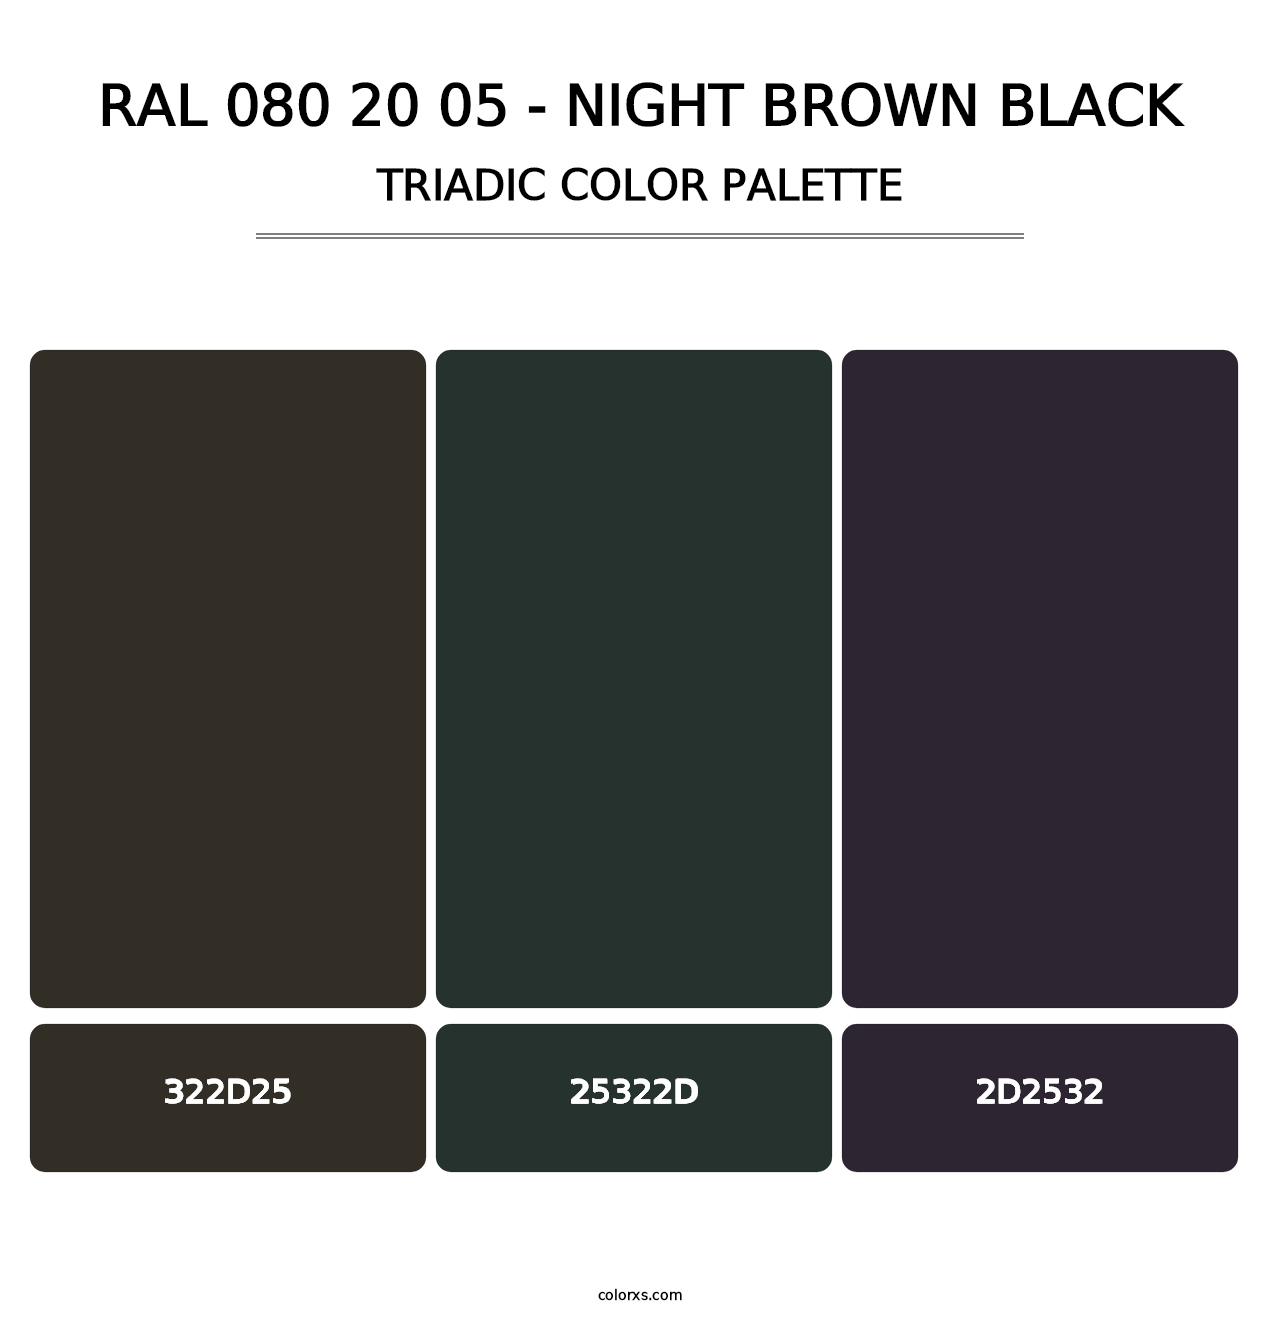 RAL 080 20 05 - Night Brown Black - Triadic Color Palette